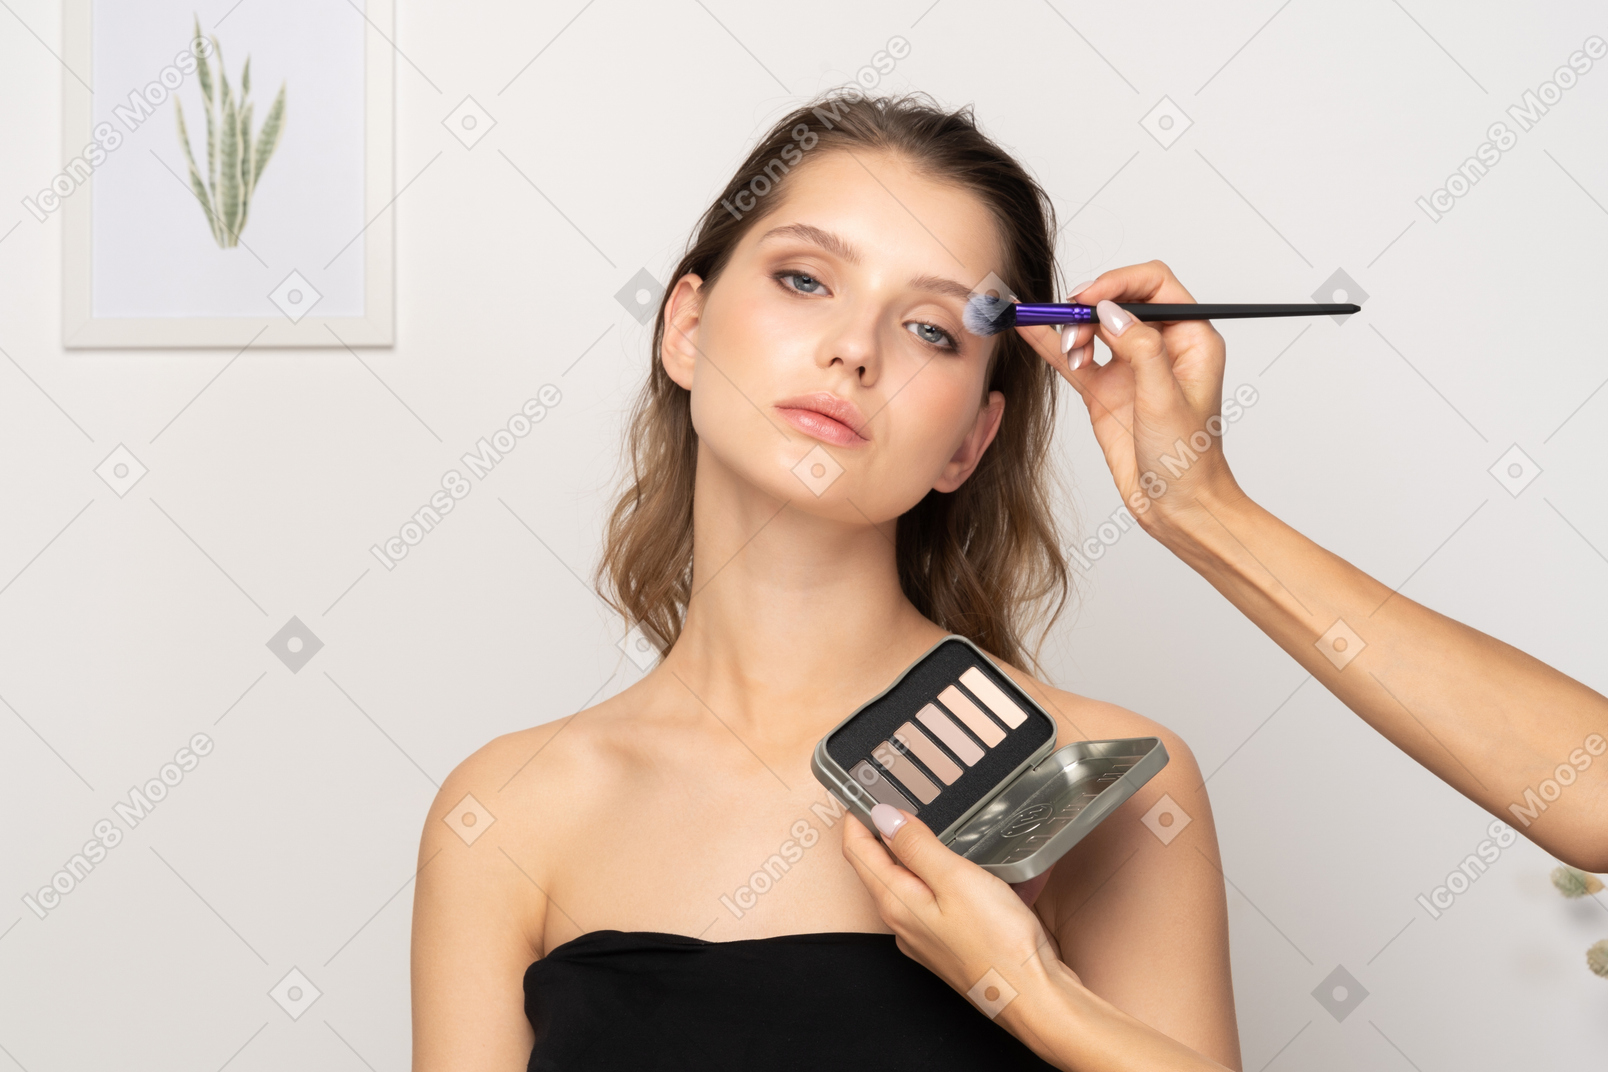 여성 모델을 위해 눈 화장을 하는 메이크업 아티스트의 전면 모습